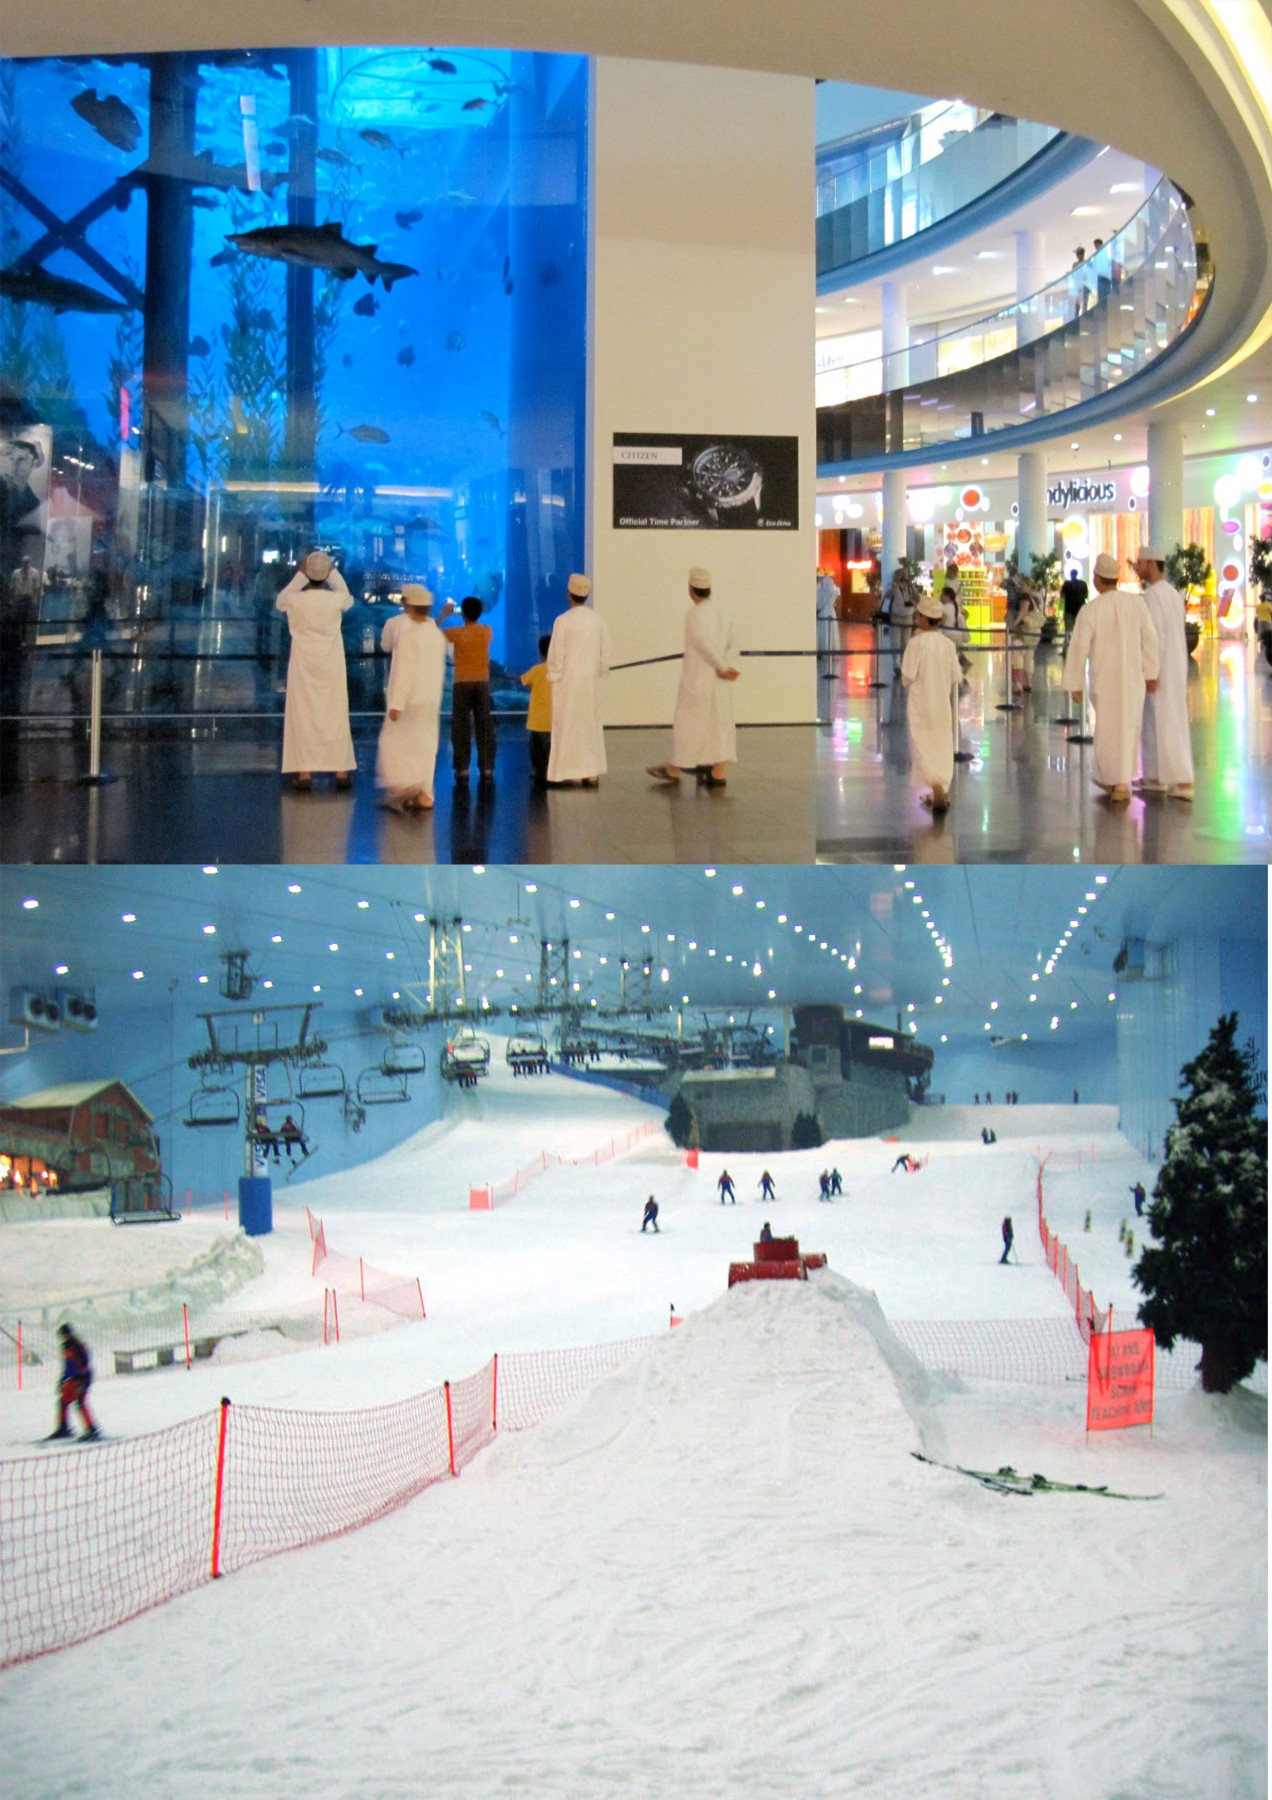 Dubai Mall Fish Aquairium and Ice Ski The Mall Of Dubai UAE Beautiful Global